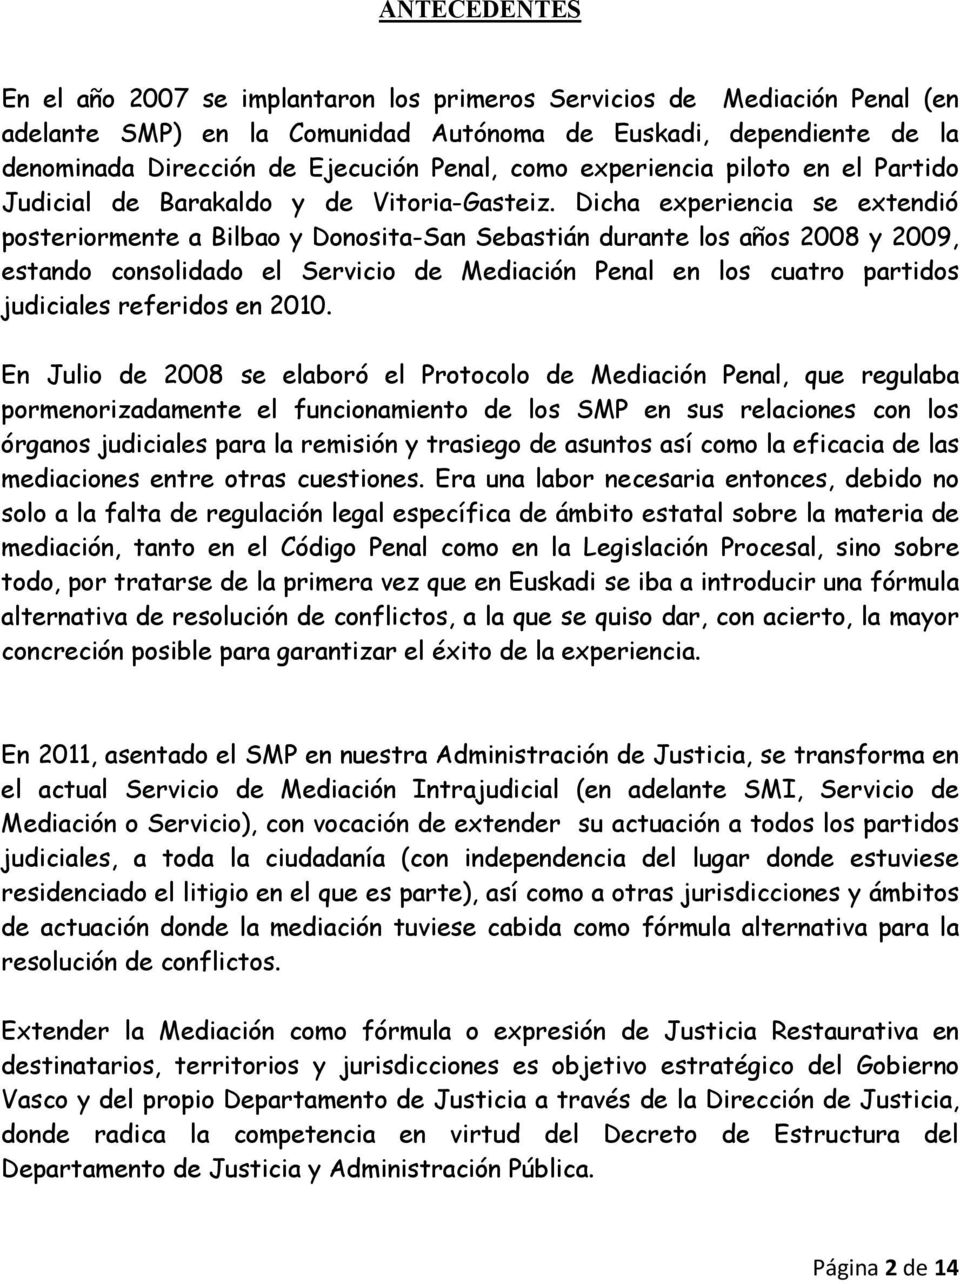 Dicha experiencia se extendió posteriormente a Bilbao y Donosita-San Sebastián durante los años 2008 y 2009, estando consolidado el Servicio de Mediación Penal en los cuatro partidos judiciales